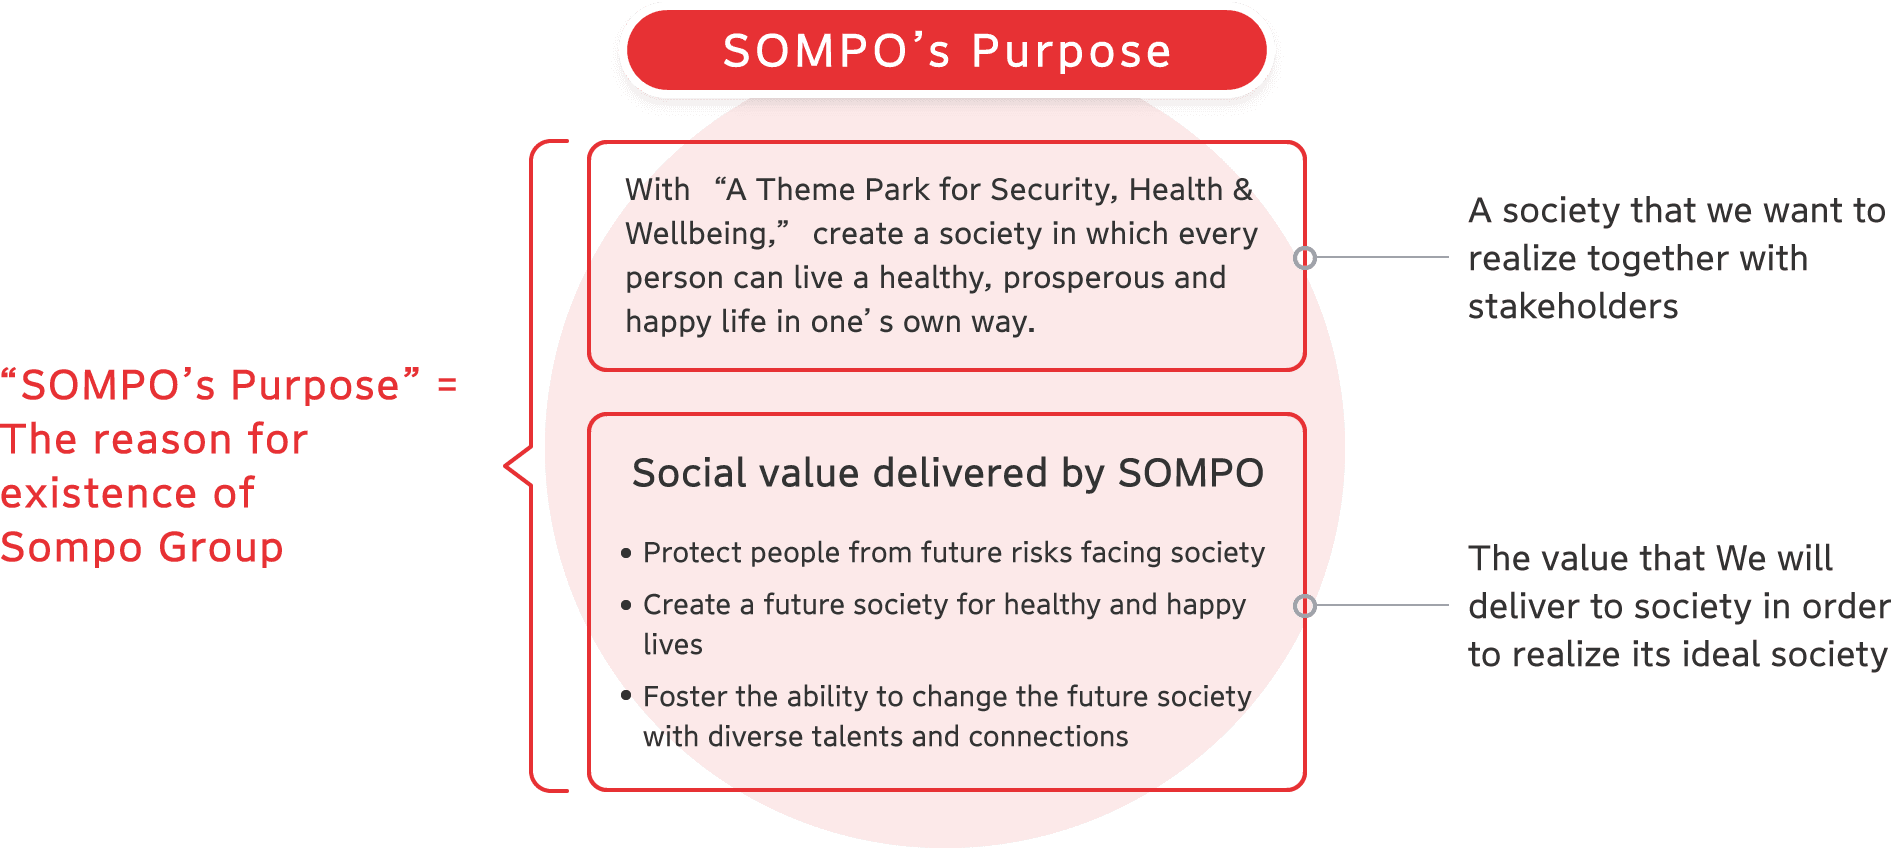 SOMPO’s Purpose